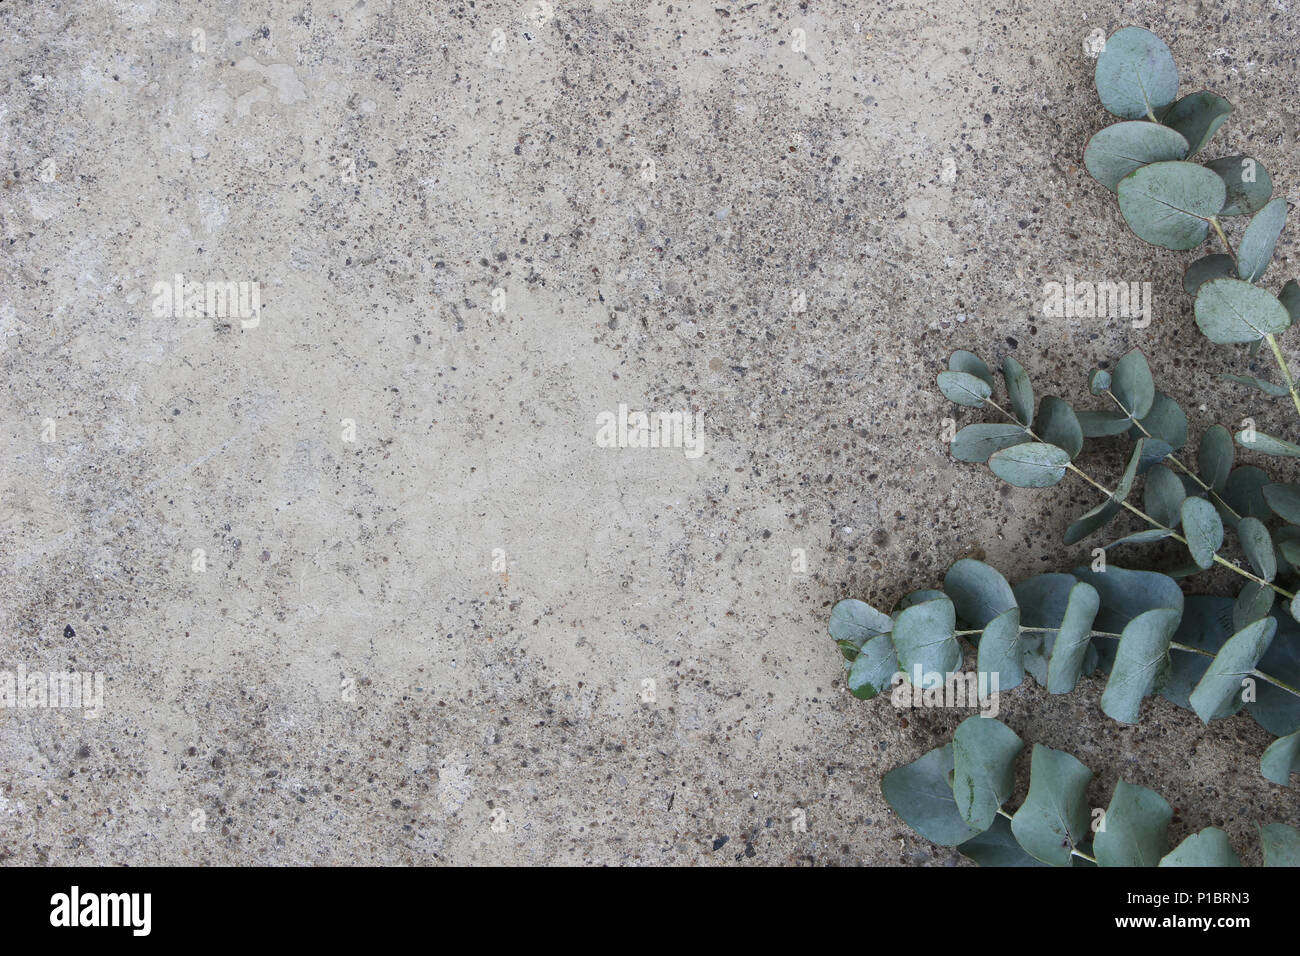 Feminin Foto. Florale Komposition von Green Silver Dollar eukalyptus Blätter und Zweige. Grunge konkreten Hintergrund. Flach, Ansicht von oben. Der leere Raum. Stockfoto